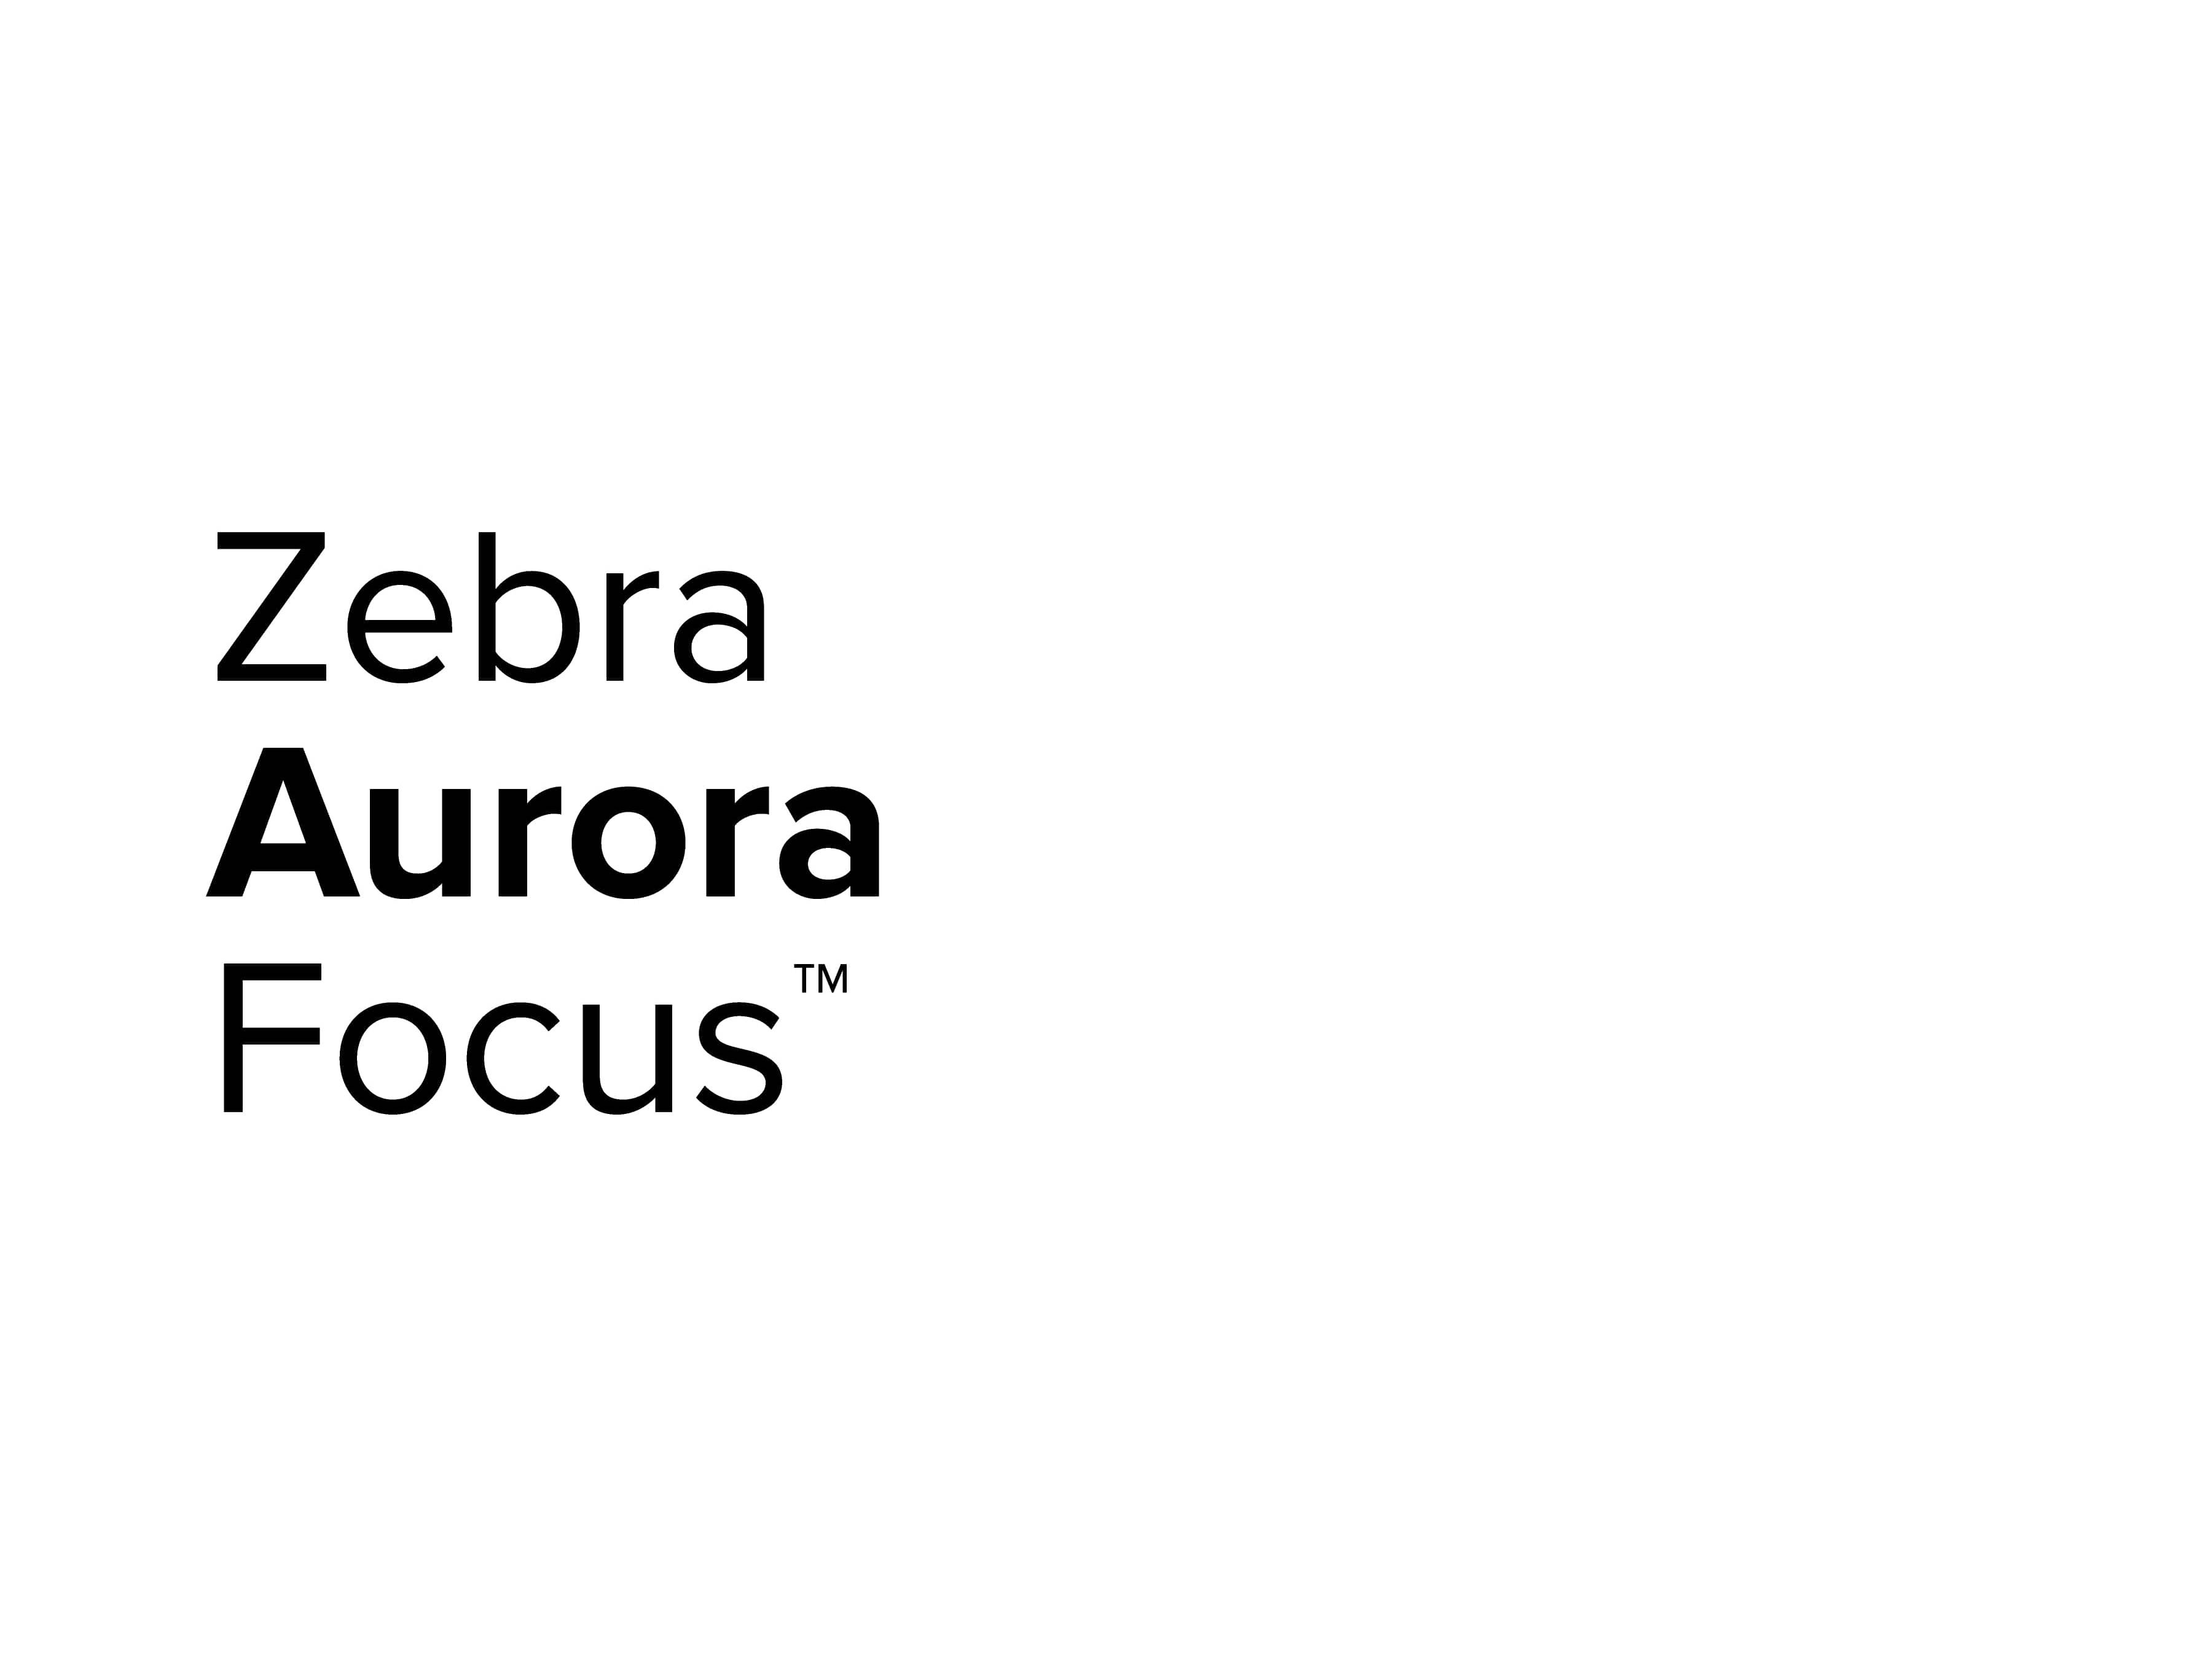 Zebra Aurora Focus 로고